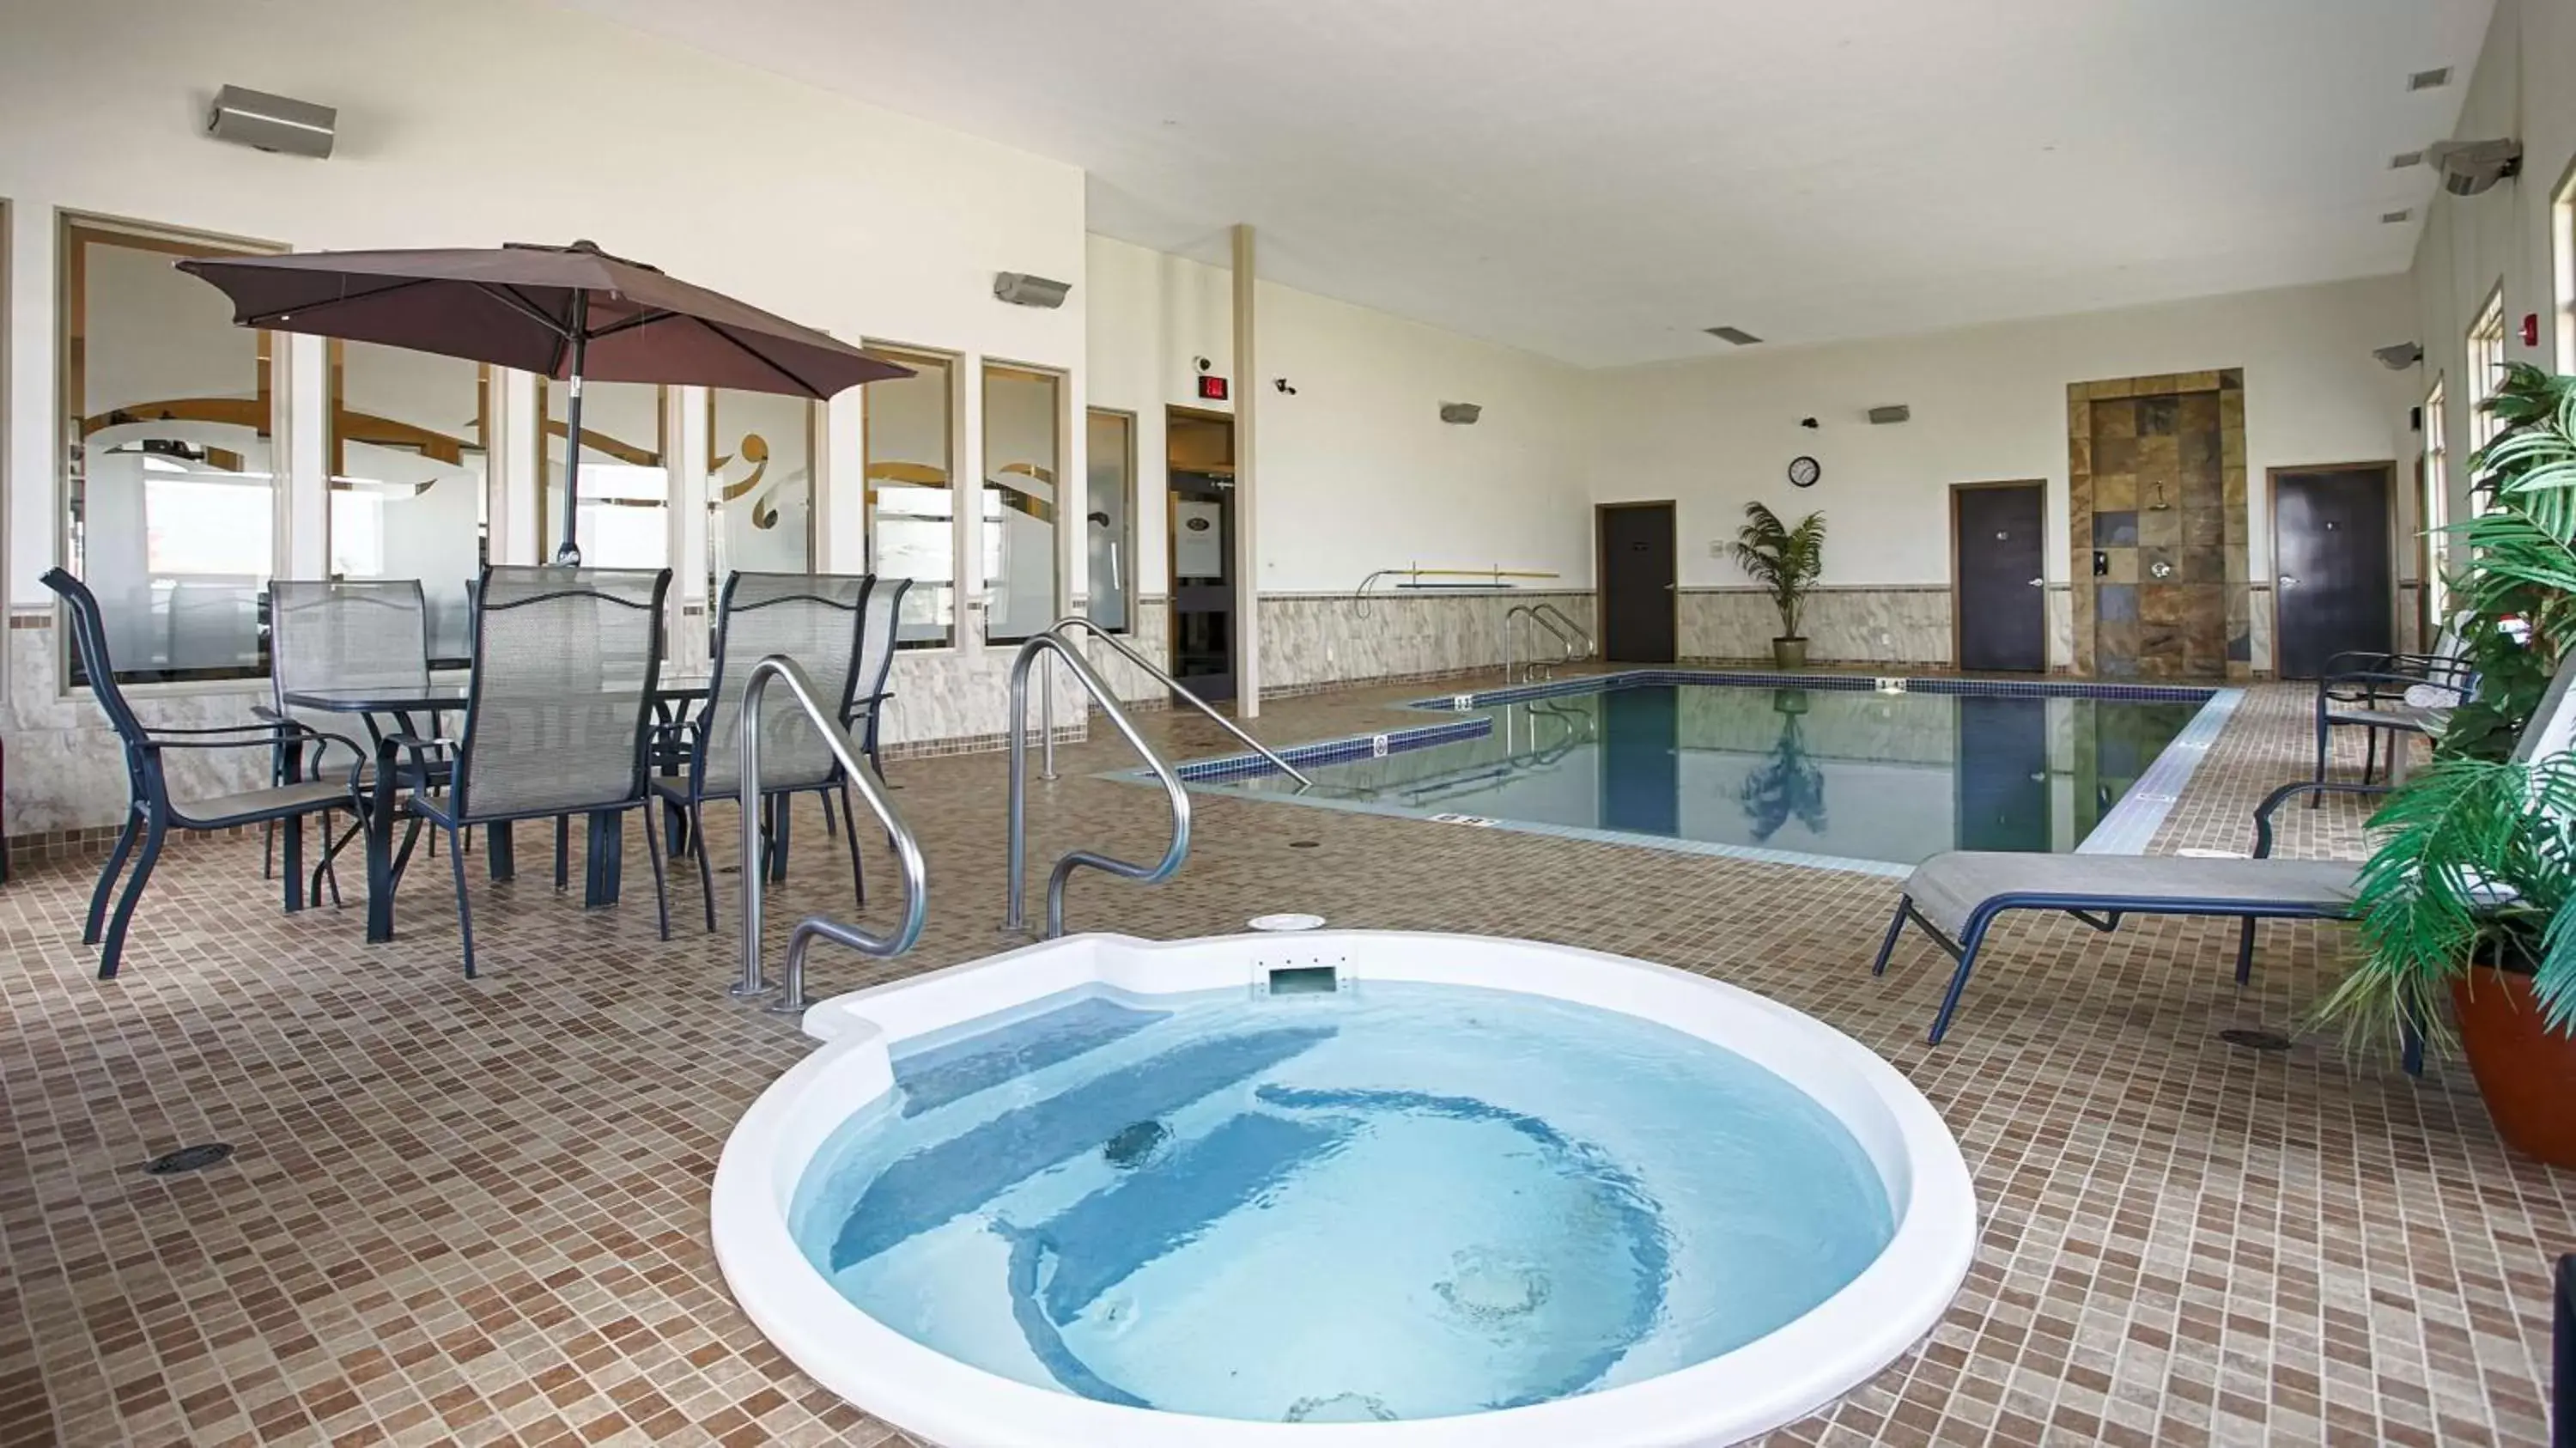 On site, Swimming Pool in Best Western Wainwright Inn & Suites